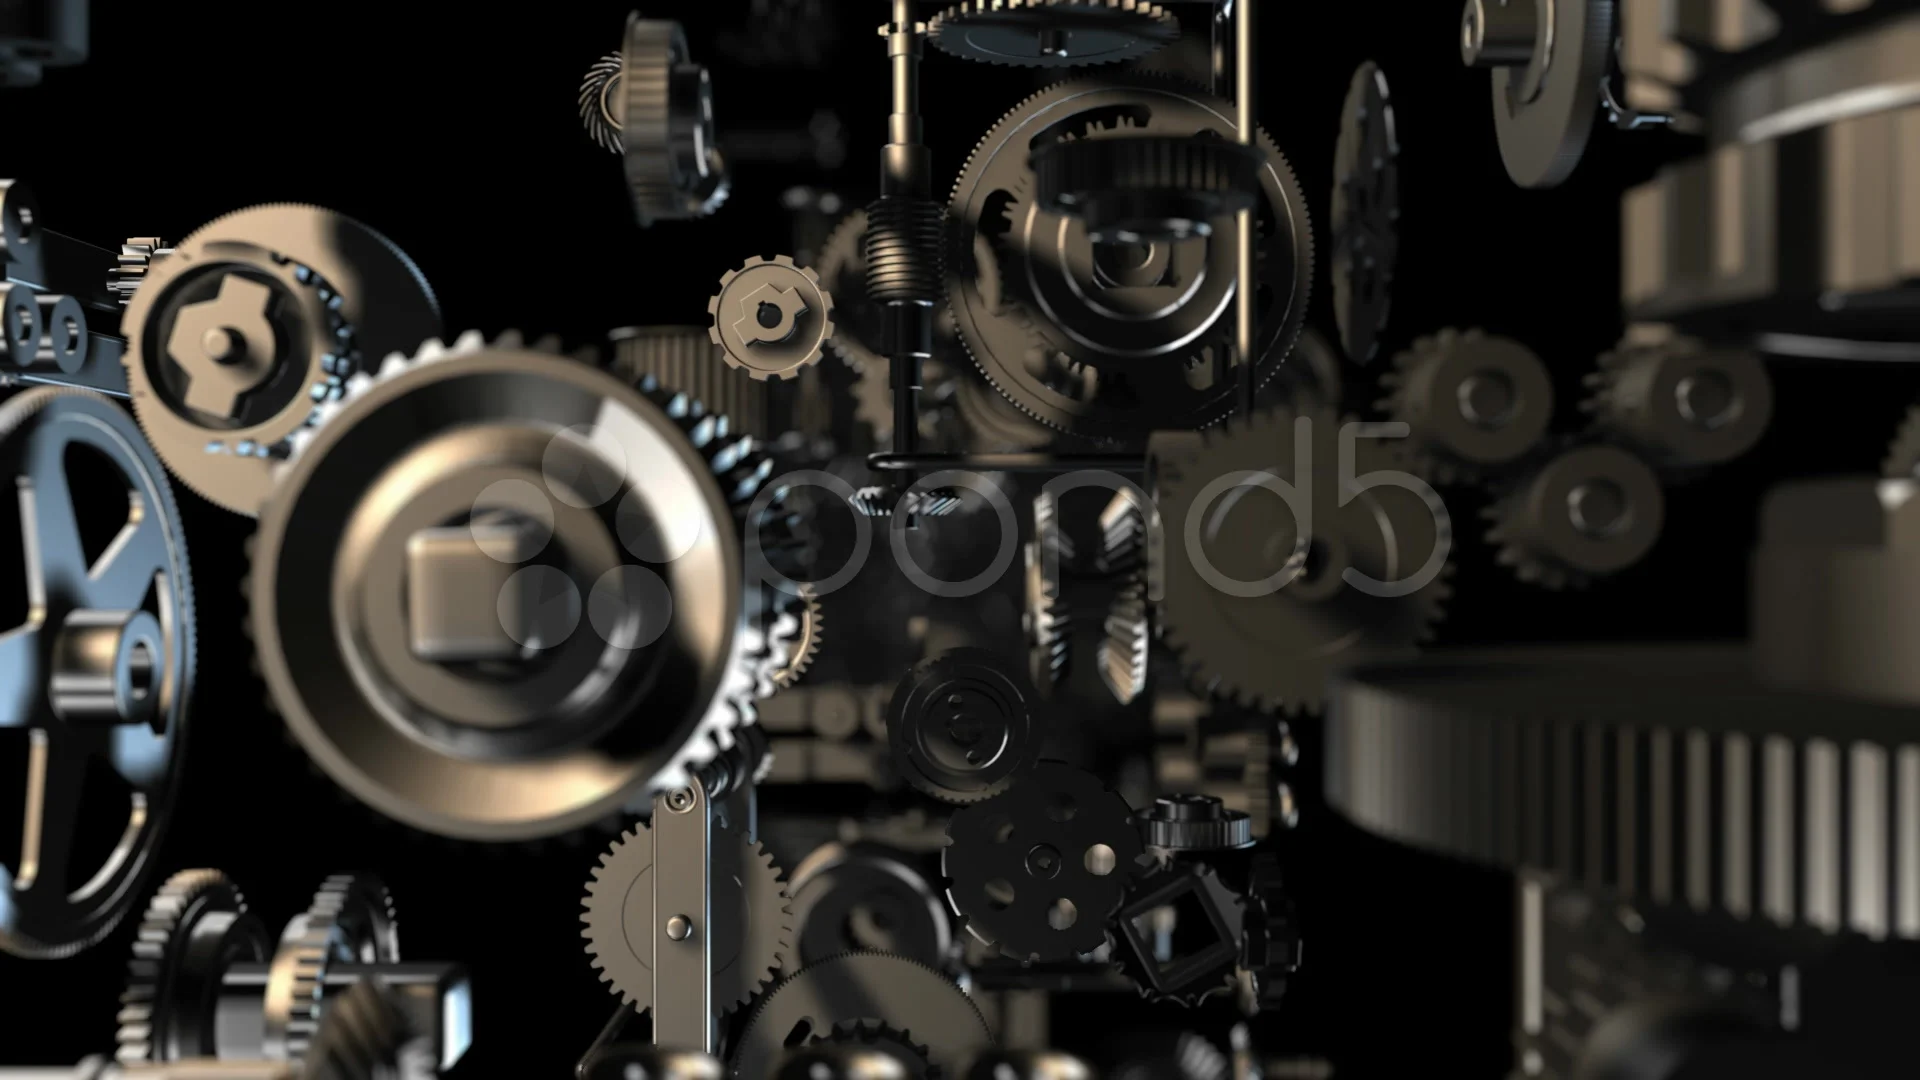 Nền Gears 3 là kho tàng công nghệ vô cùng đáng để khám phá. Thiết kế đa dạng và sáng tạo của những bộ 3D Gear chắc chắn sẽ làm bạn say lòng. Hãy xem hình ảnh để khám phá sự đa dạng của sản phẩm này.